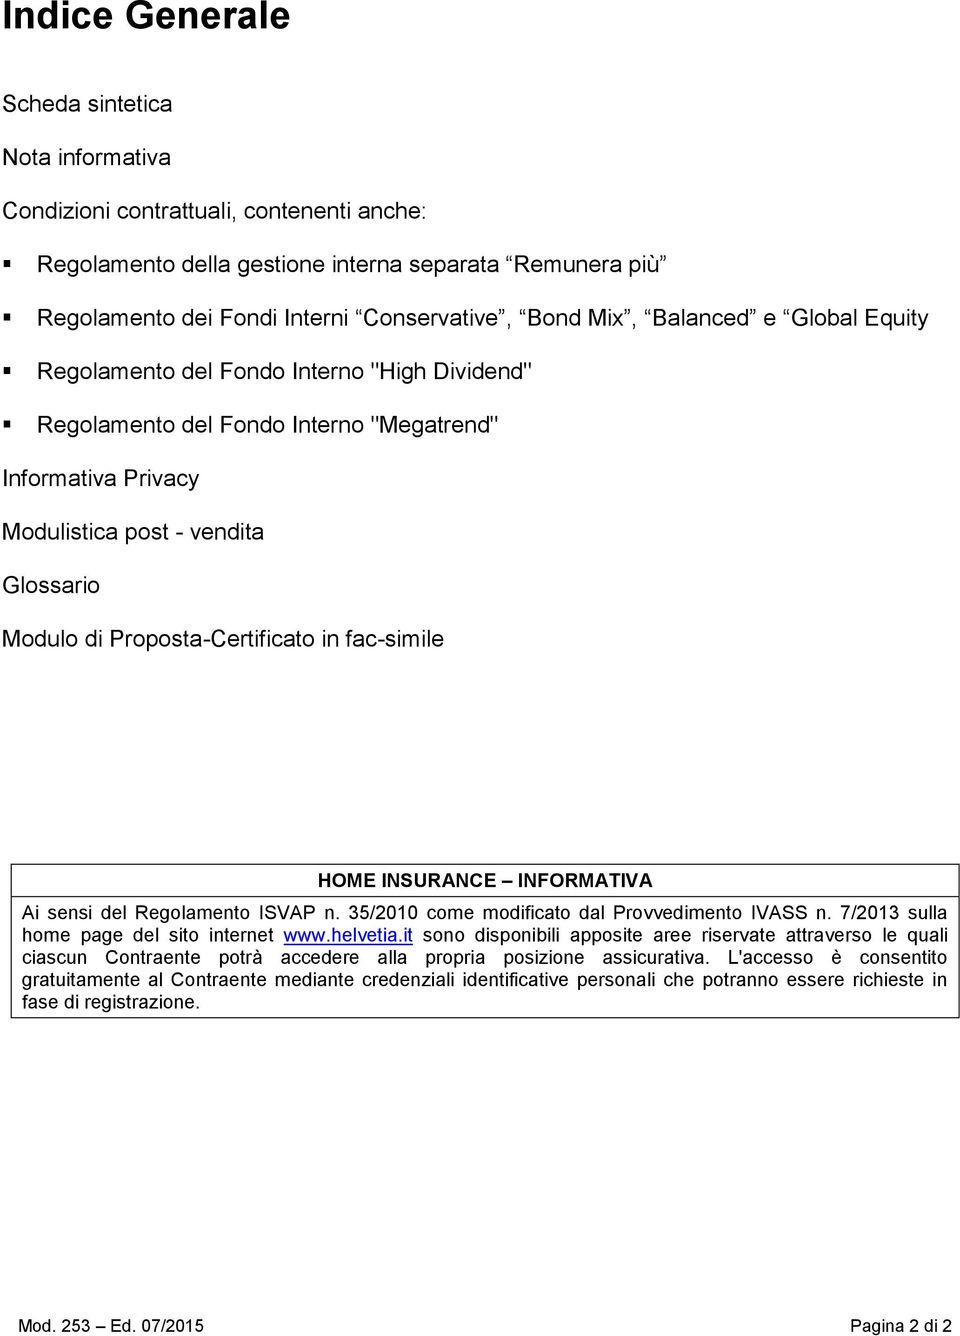 Proposta-Certificato in fac-simile HOME INSURANCE INFORMATIVA Ai sensi del Regolamento ISVAP n. 35/2010 come modificato dal Provvedimento IVASS n. 7/2013 sulla home page del sito internet www.